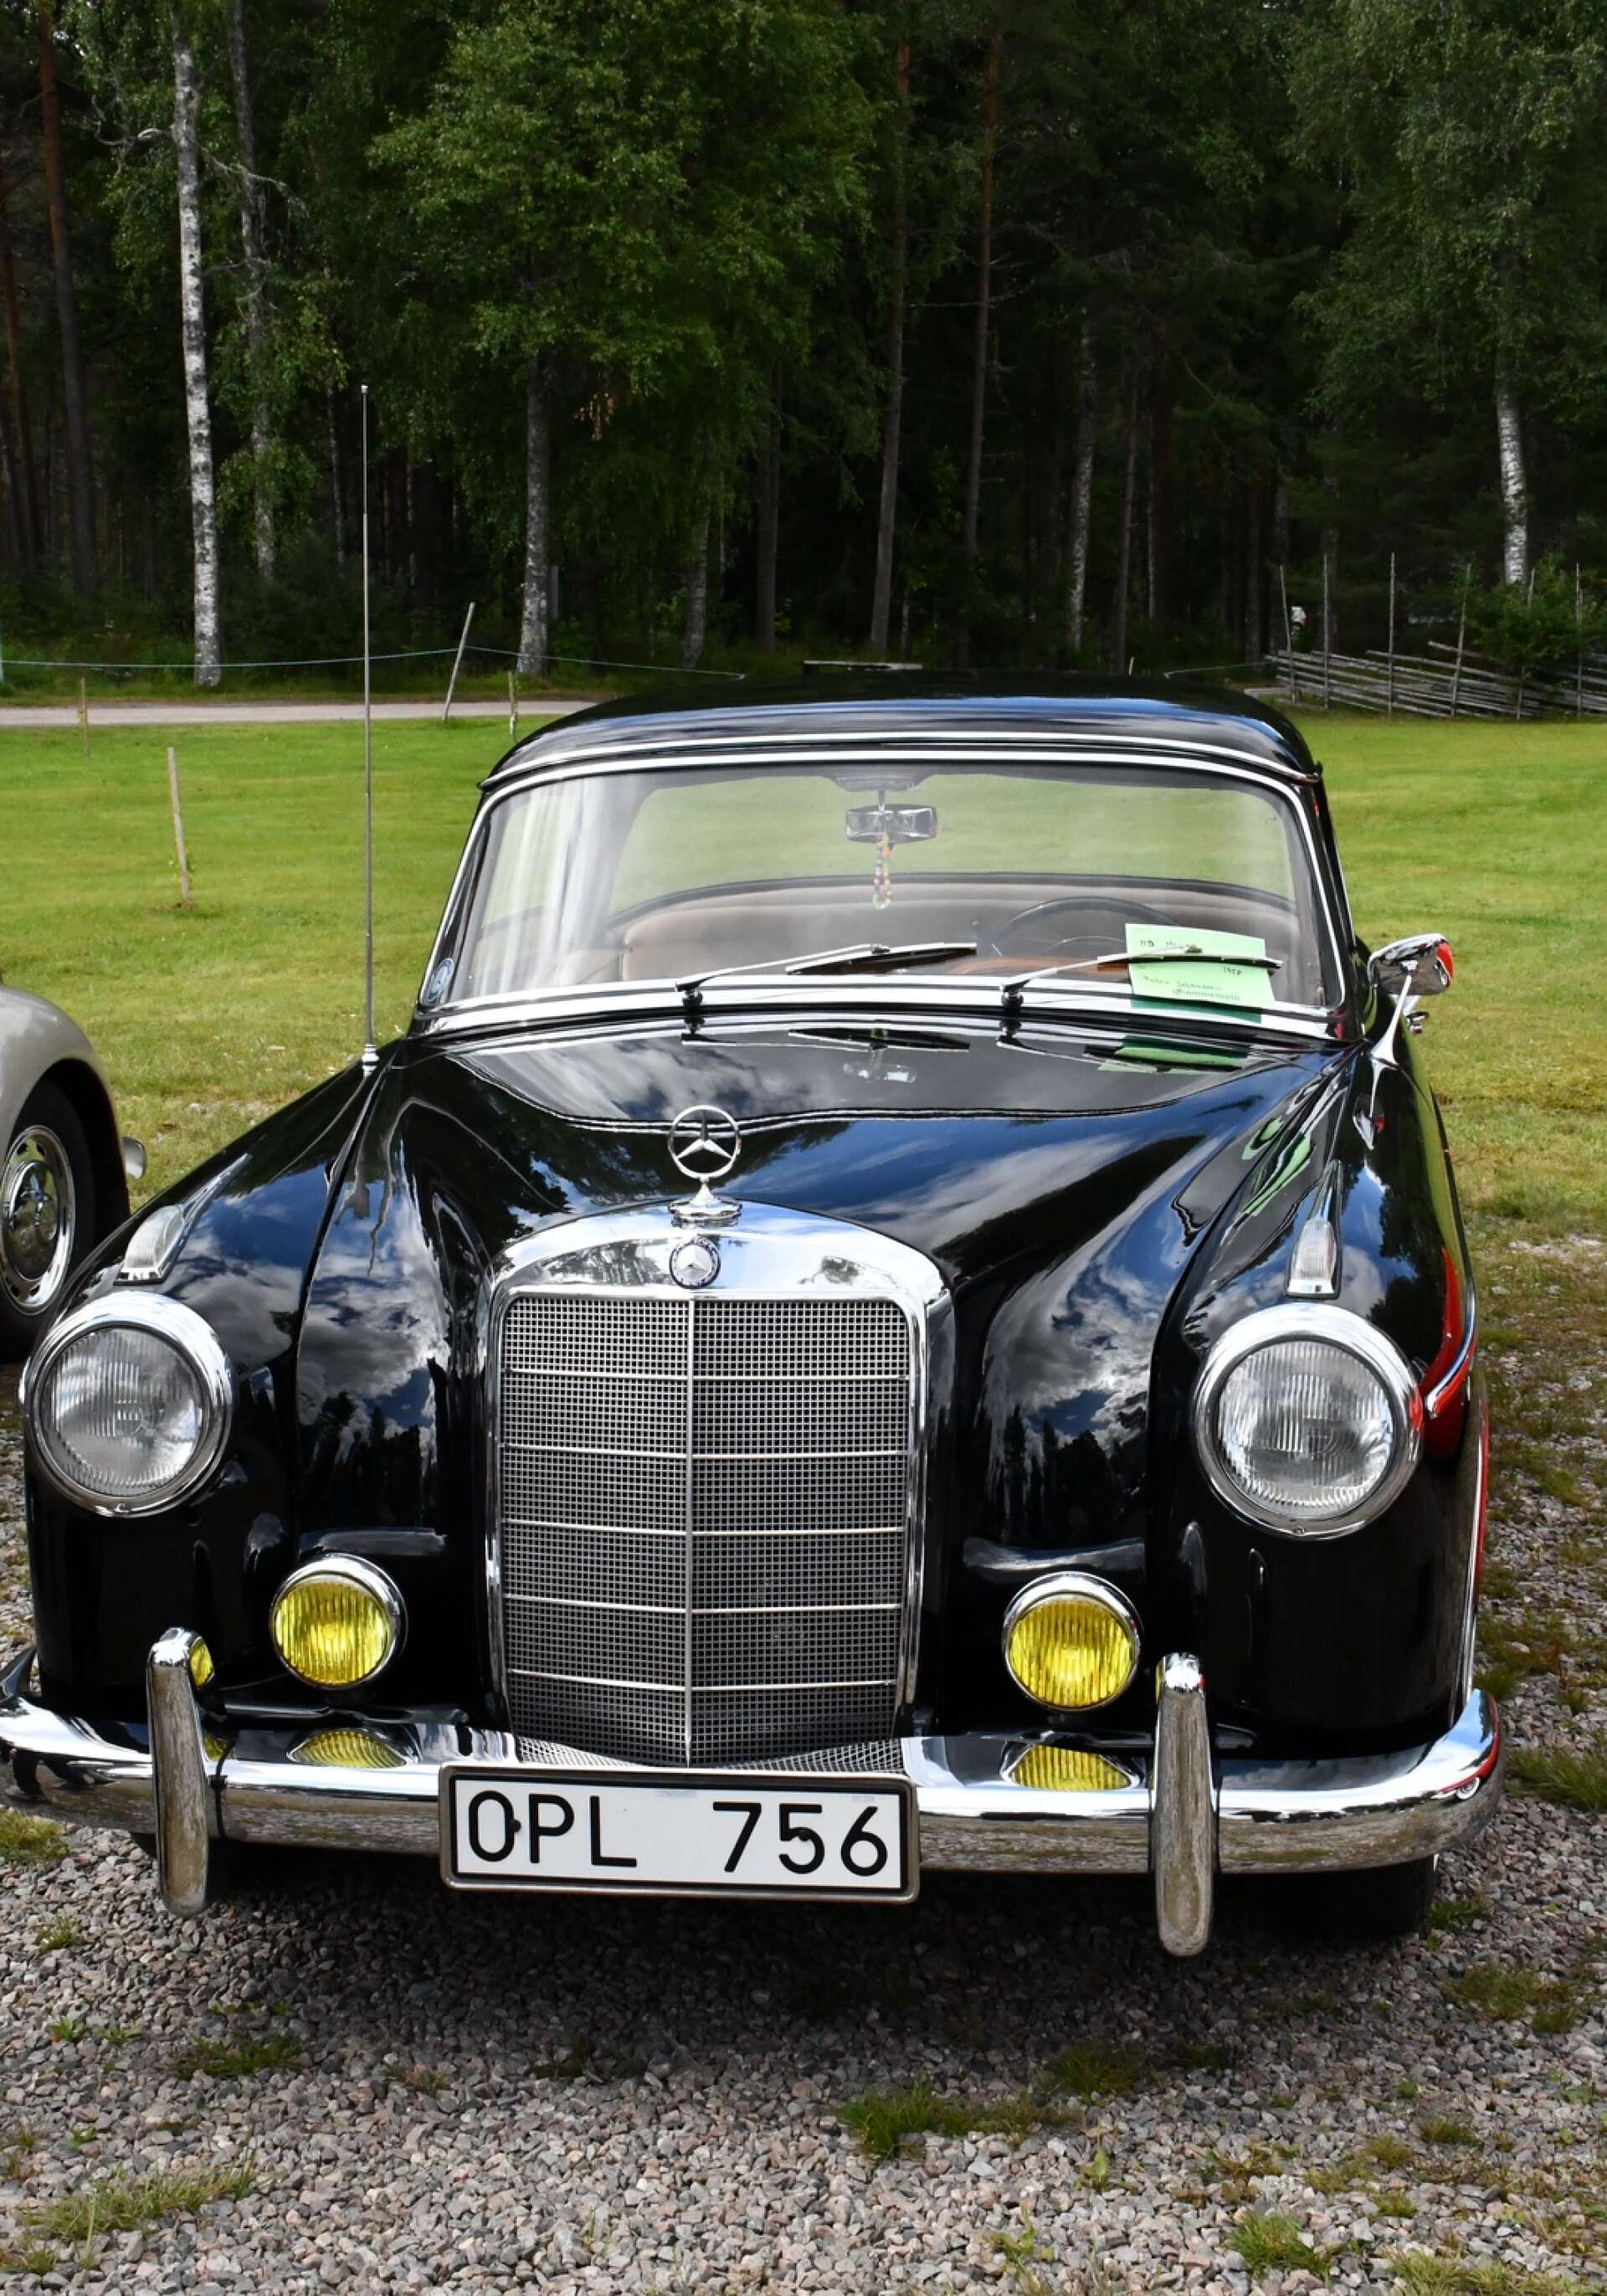 En av de tio bilar som valts ut av juryn till bilparaden: En Mercedes Benz 220S 1958. Ägare Peter Johansson.